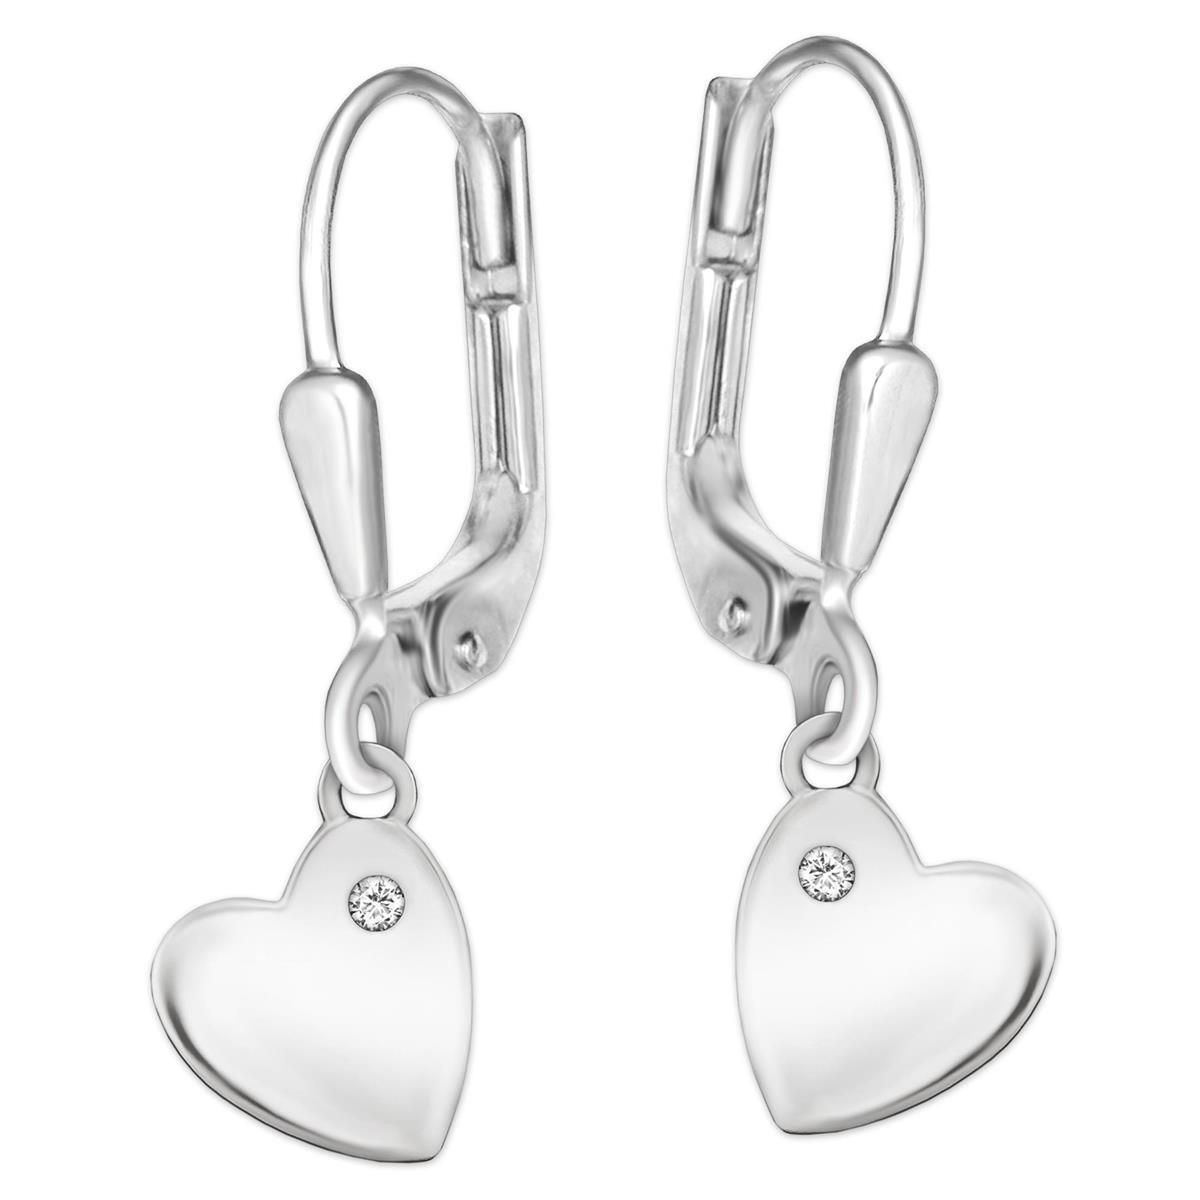 Silberne Herz Ohrhänger 25 mm mit Silberherz 9 mm seitlich hängend & Zirkonia weiß glänzend STERLING SILBER 925